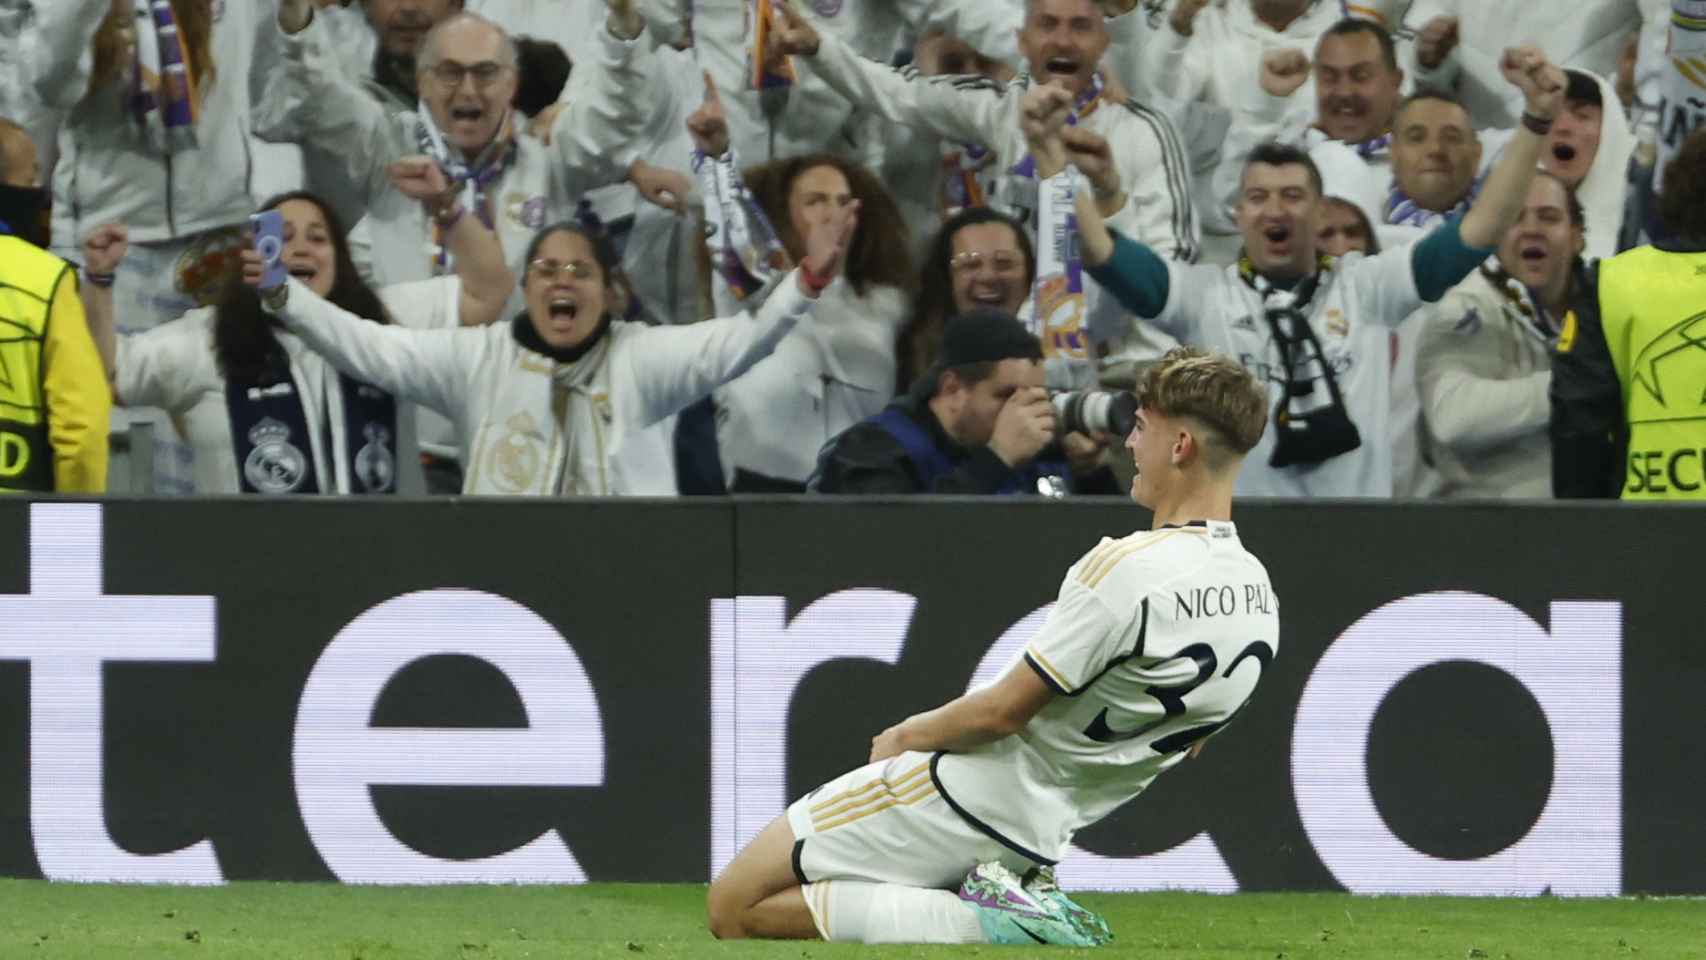 Nico Paz celebra el gol con la afición del Bernabéu al fondo.